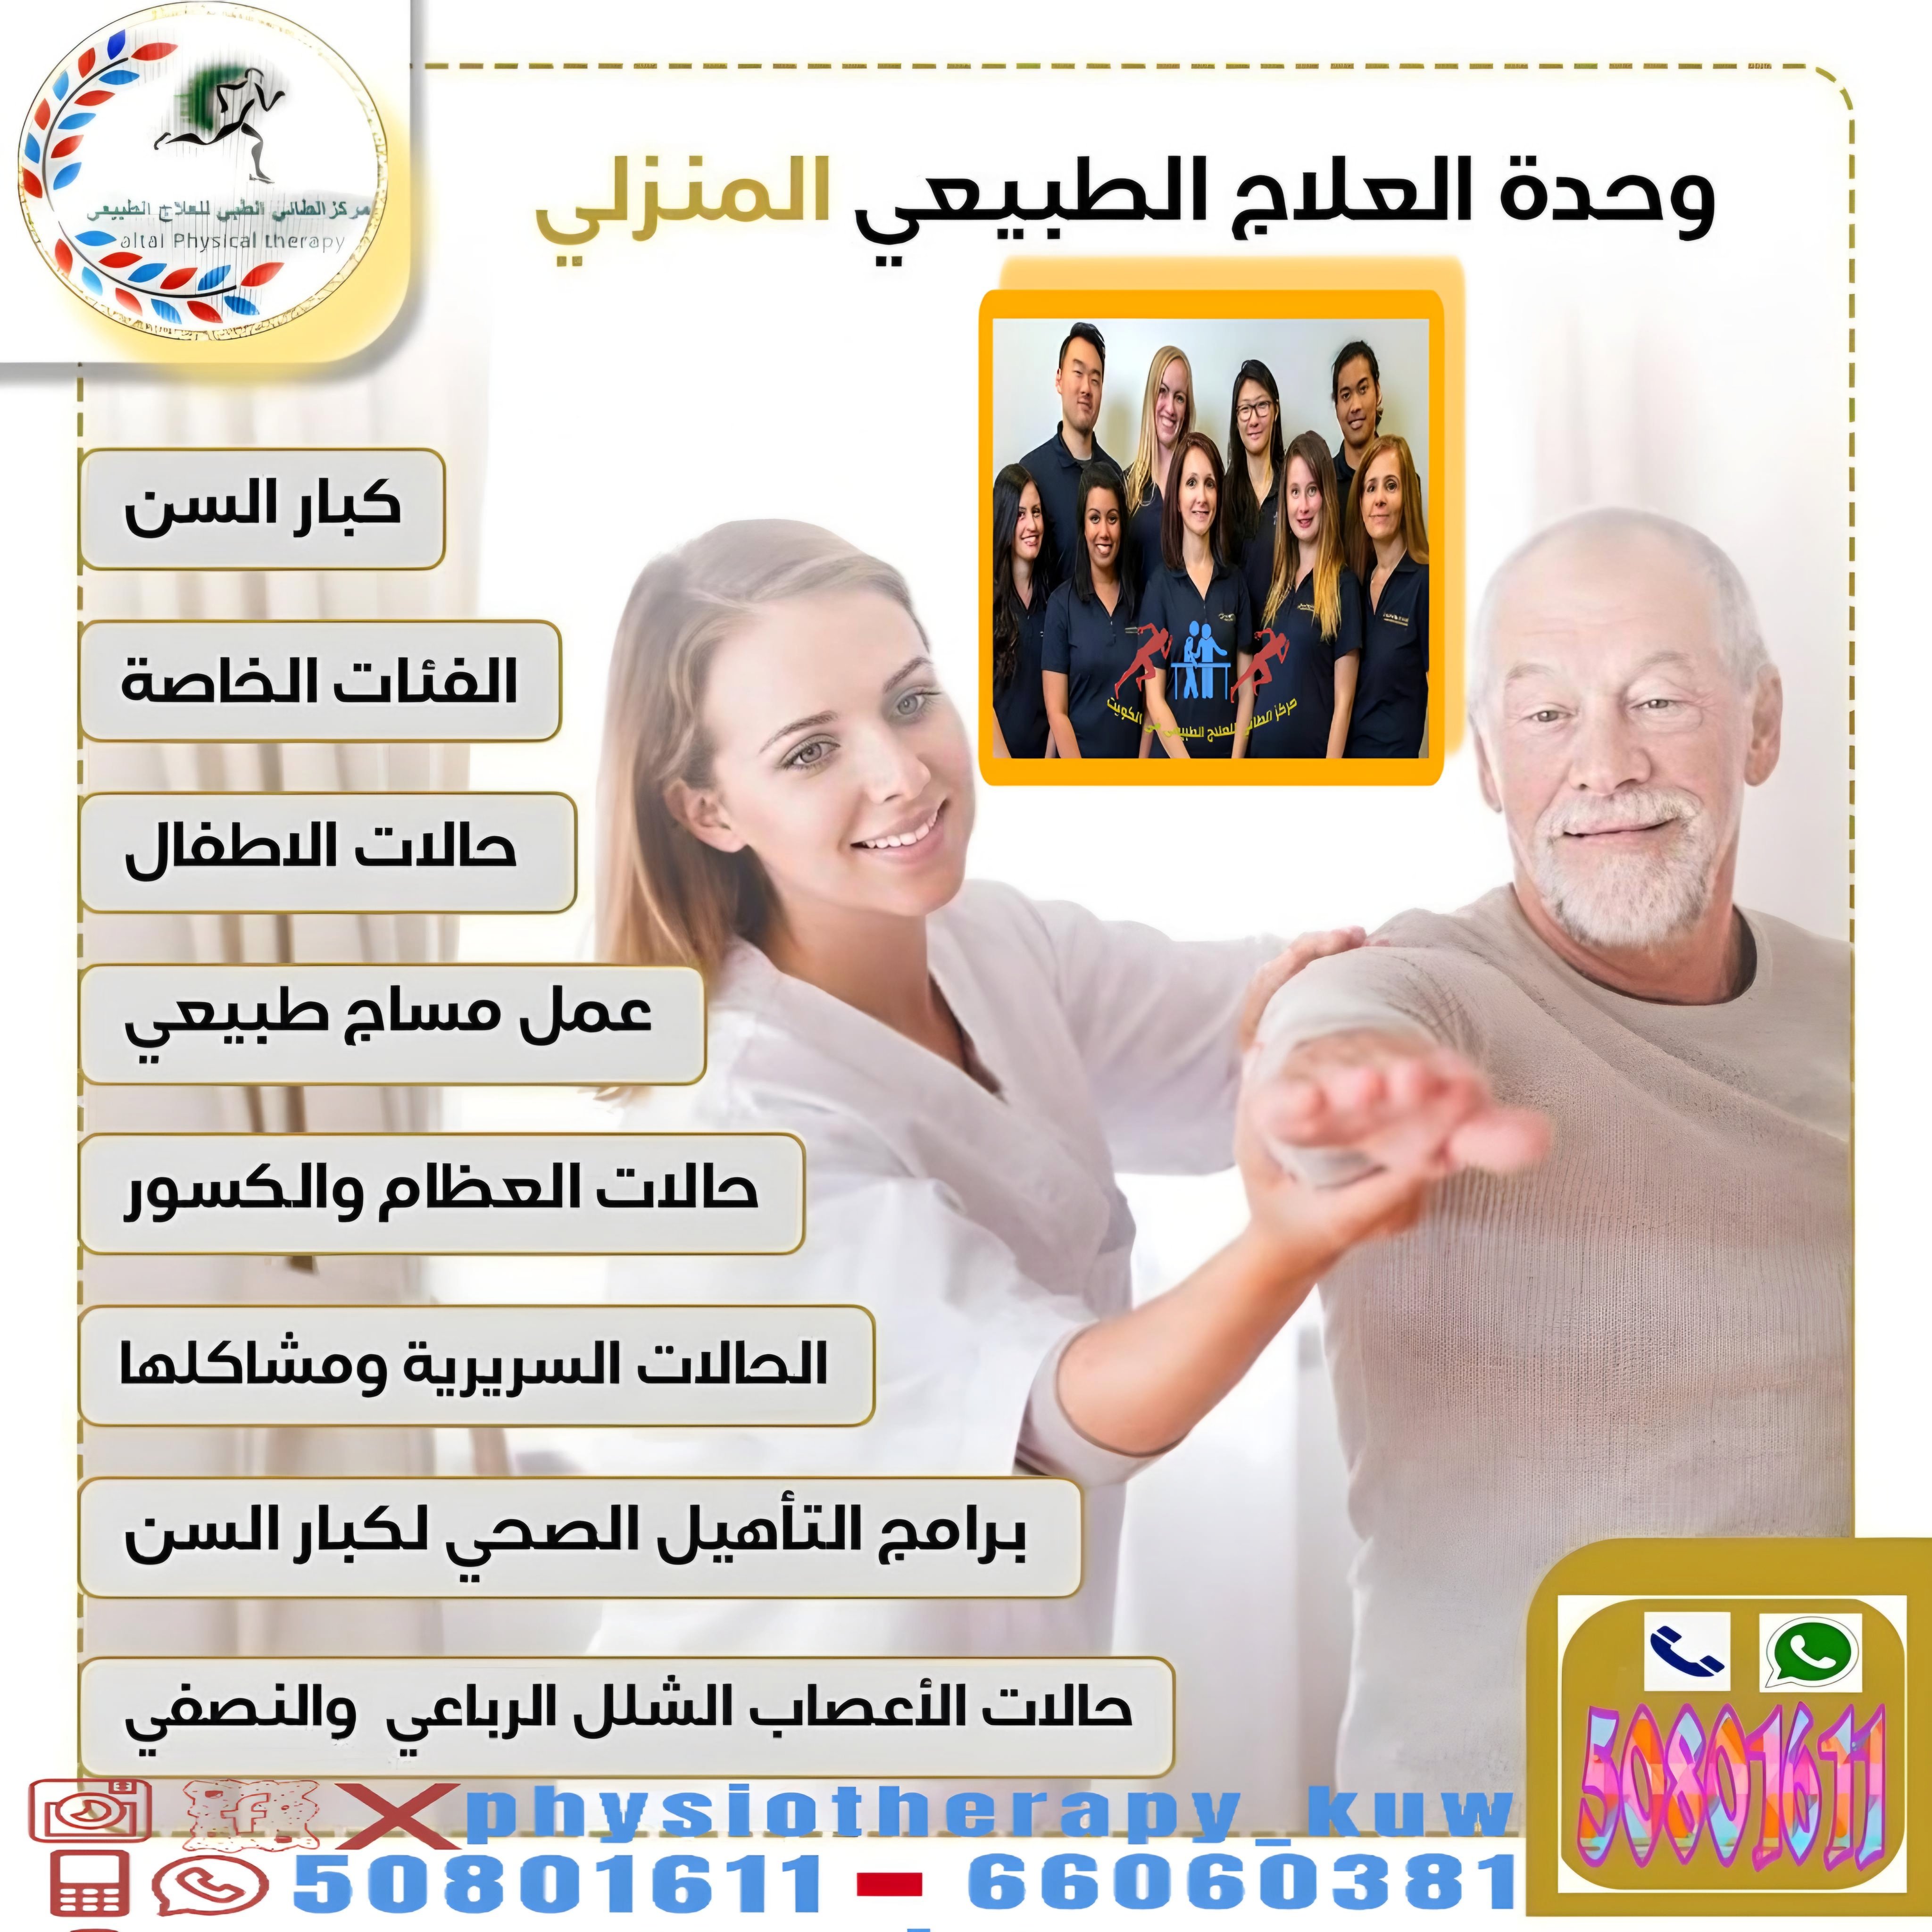 علاج فقرات الظهر بالعلاج الطبيعي في الكويت